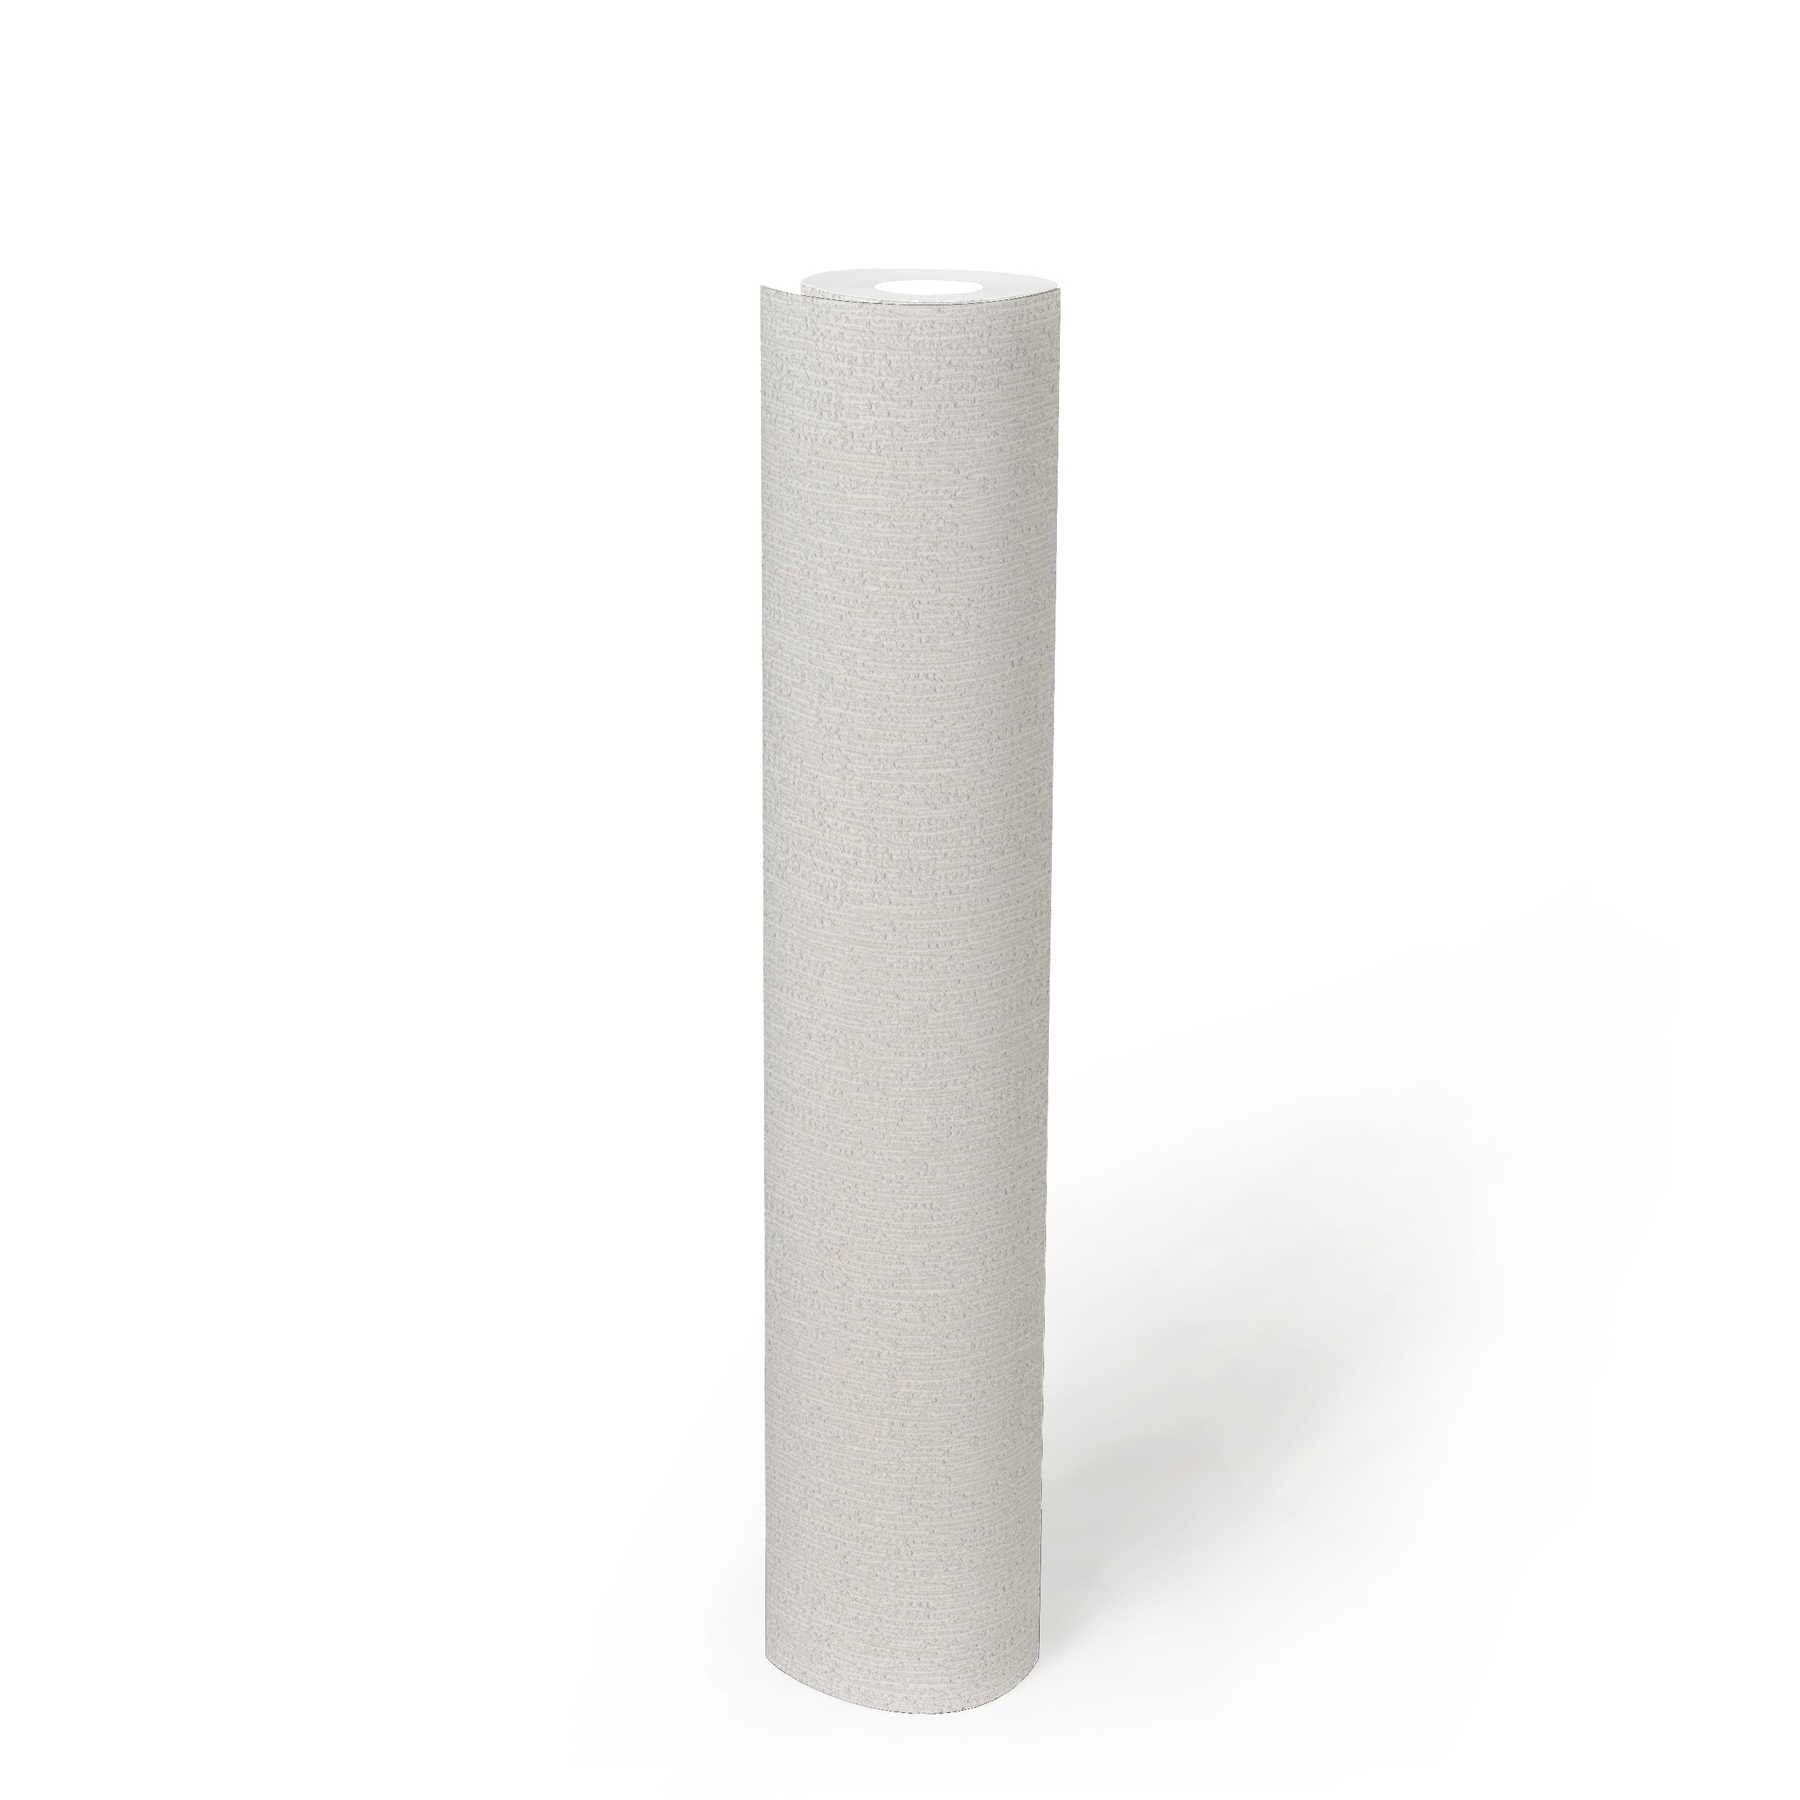             vinyle expansé intissé gris clair blanc avec motif naturel
        